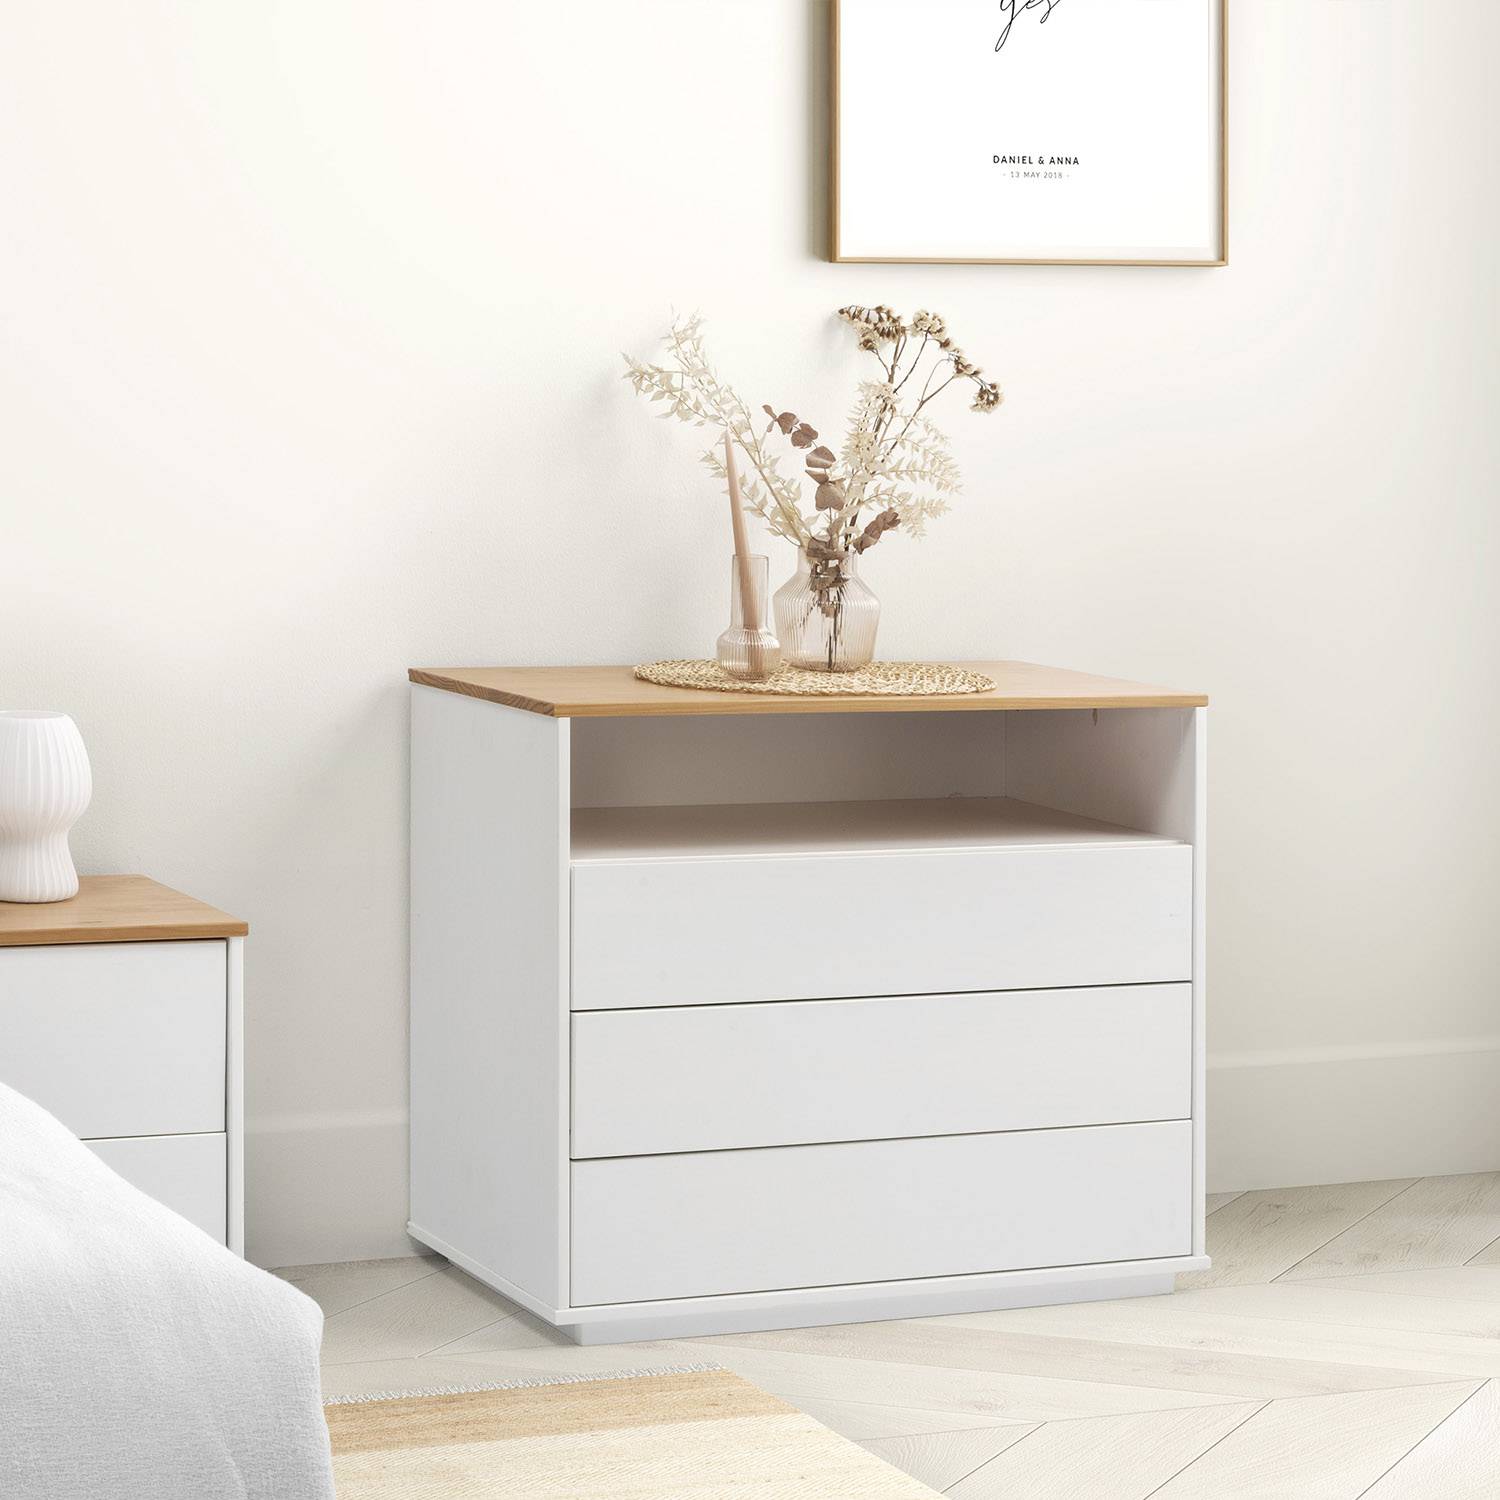 Cómodas para el Dormitorio - Compra Online - IKEA